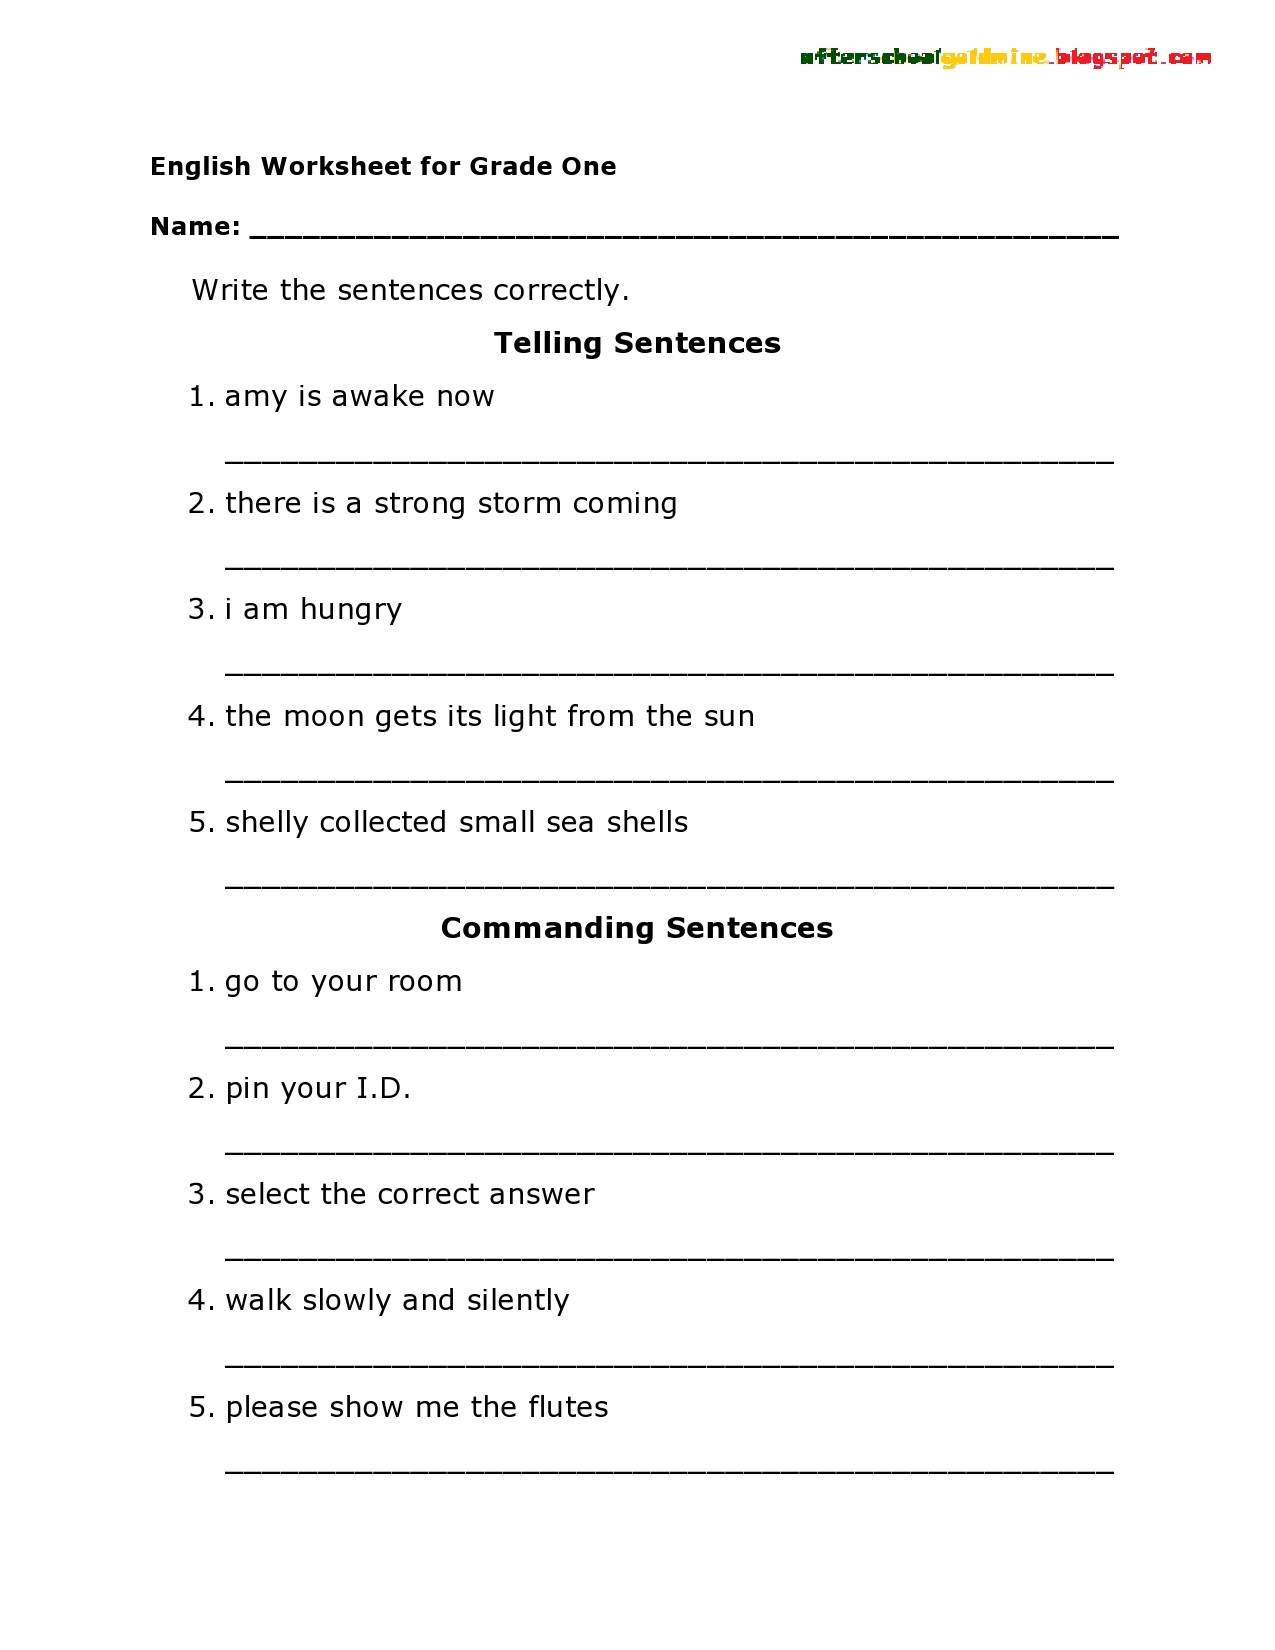 Writing Sentences 1st Grade Essay Writing Service Sfpapergsvx